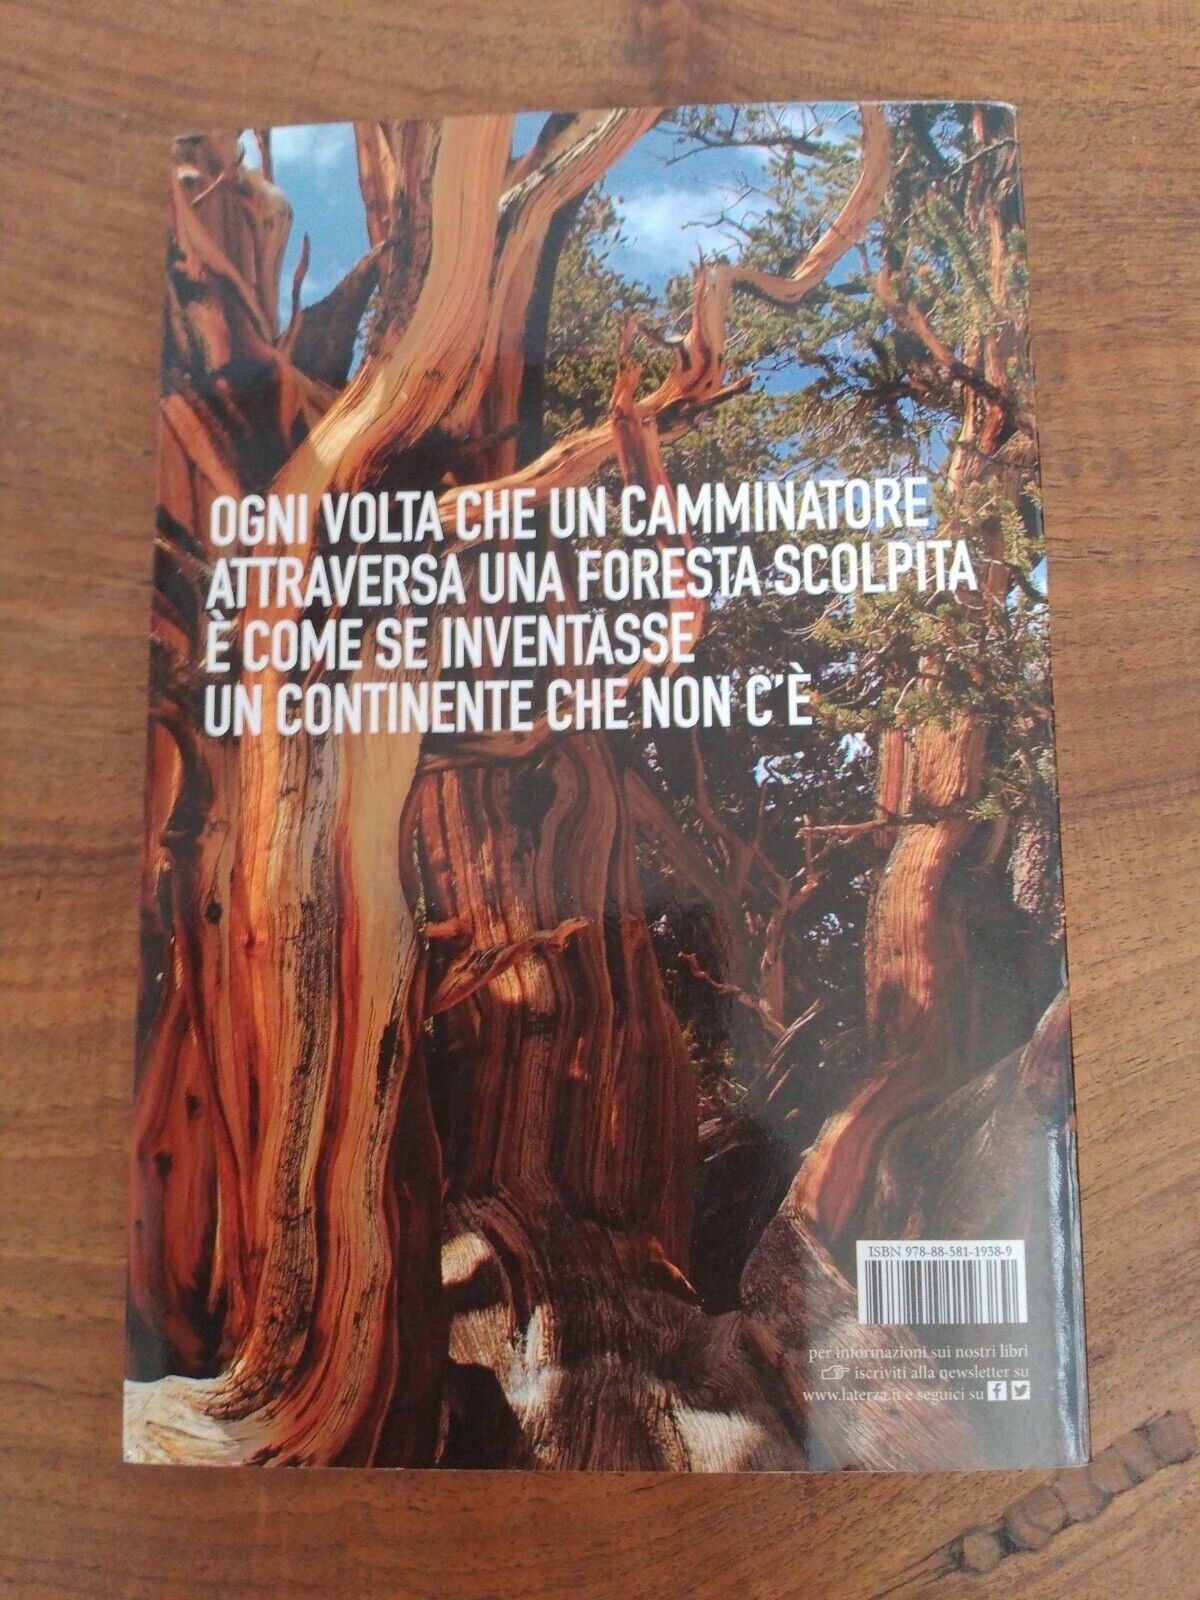 Il libro delle foreste scolpite, T. Fratus, ed. Laterza